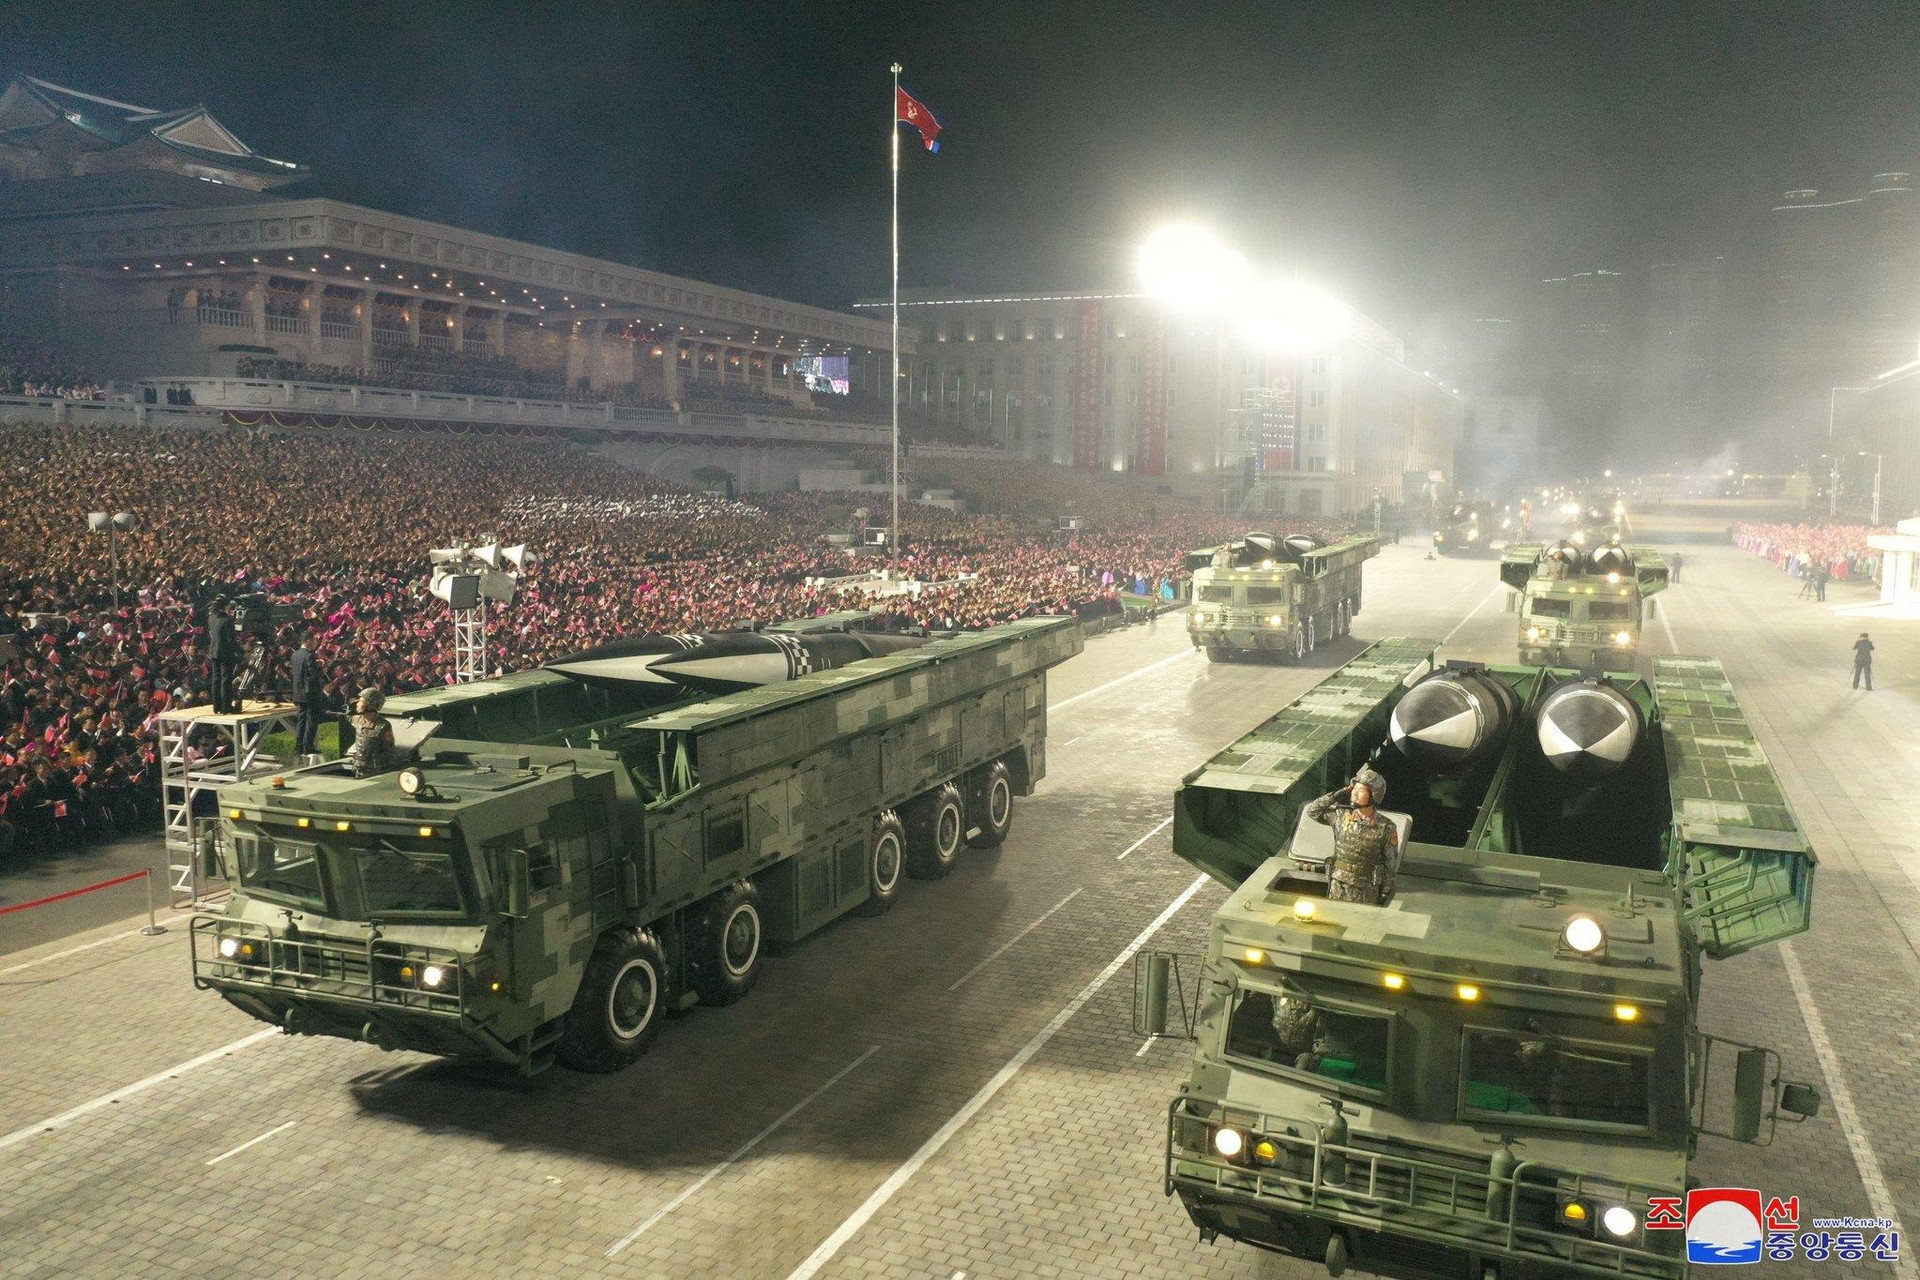 Ảnh: Triều Tiên duyệt binh với dàn tên lửa khổng lồ - 7